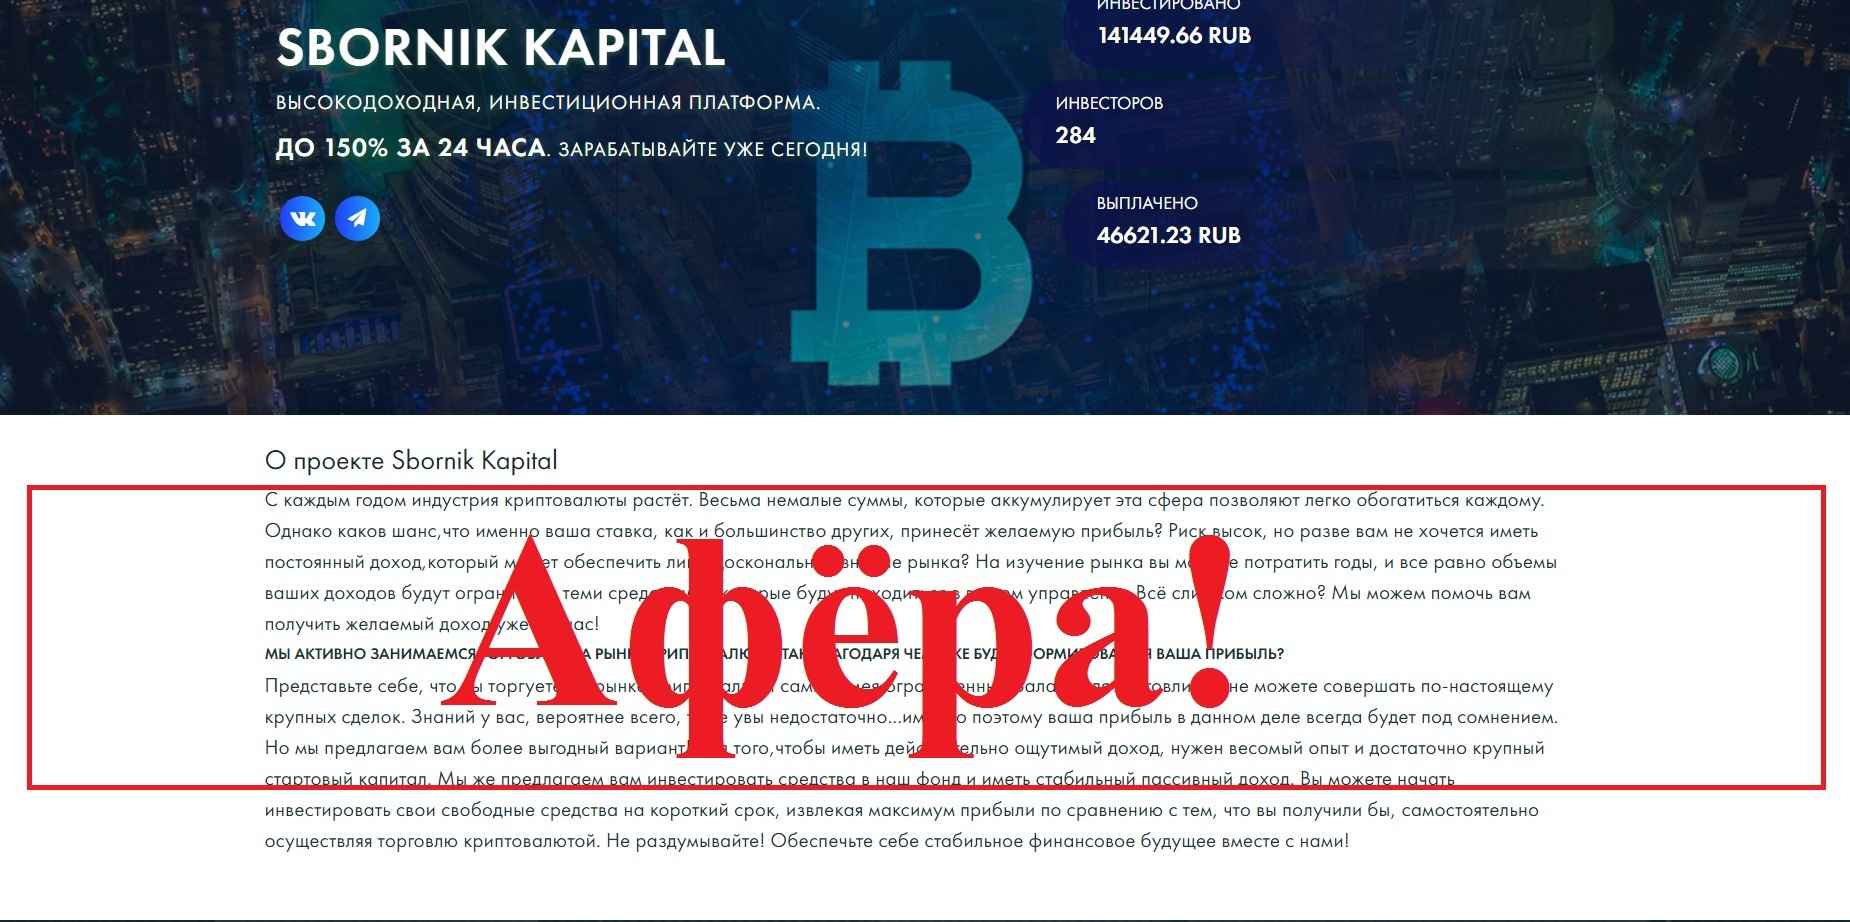 Sbornik Kapital – отзывы и обзор. Инвестиции в sbornik-kapital.pro